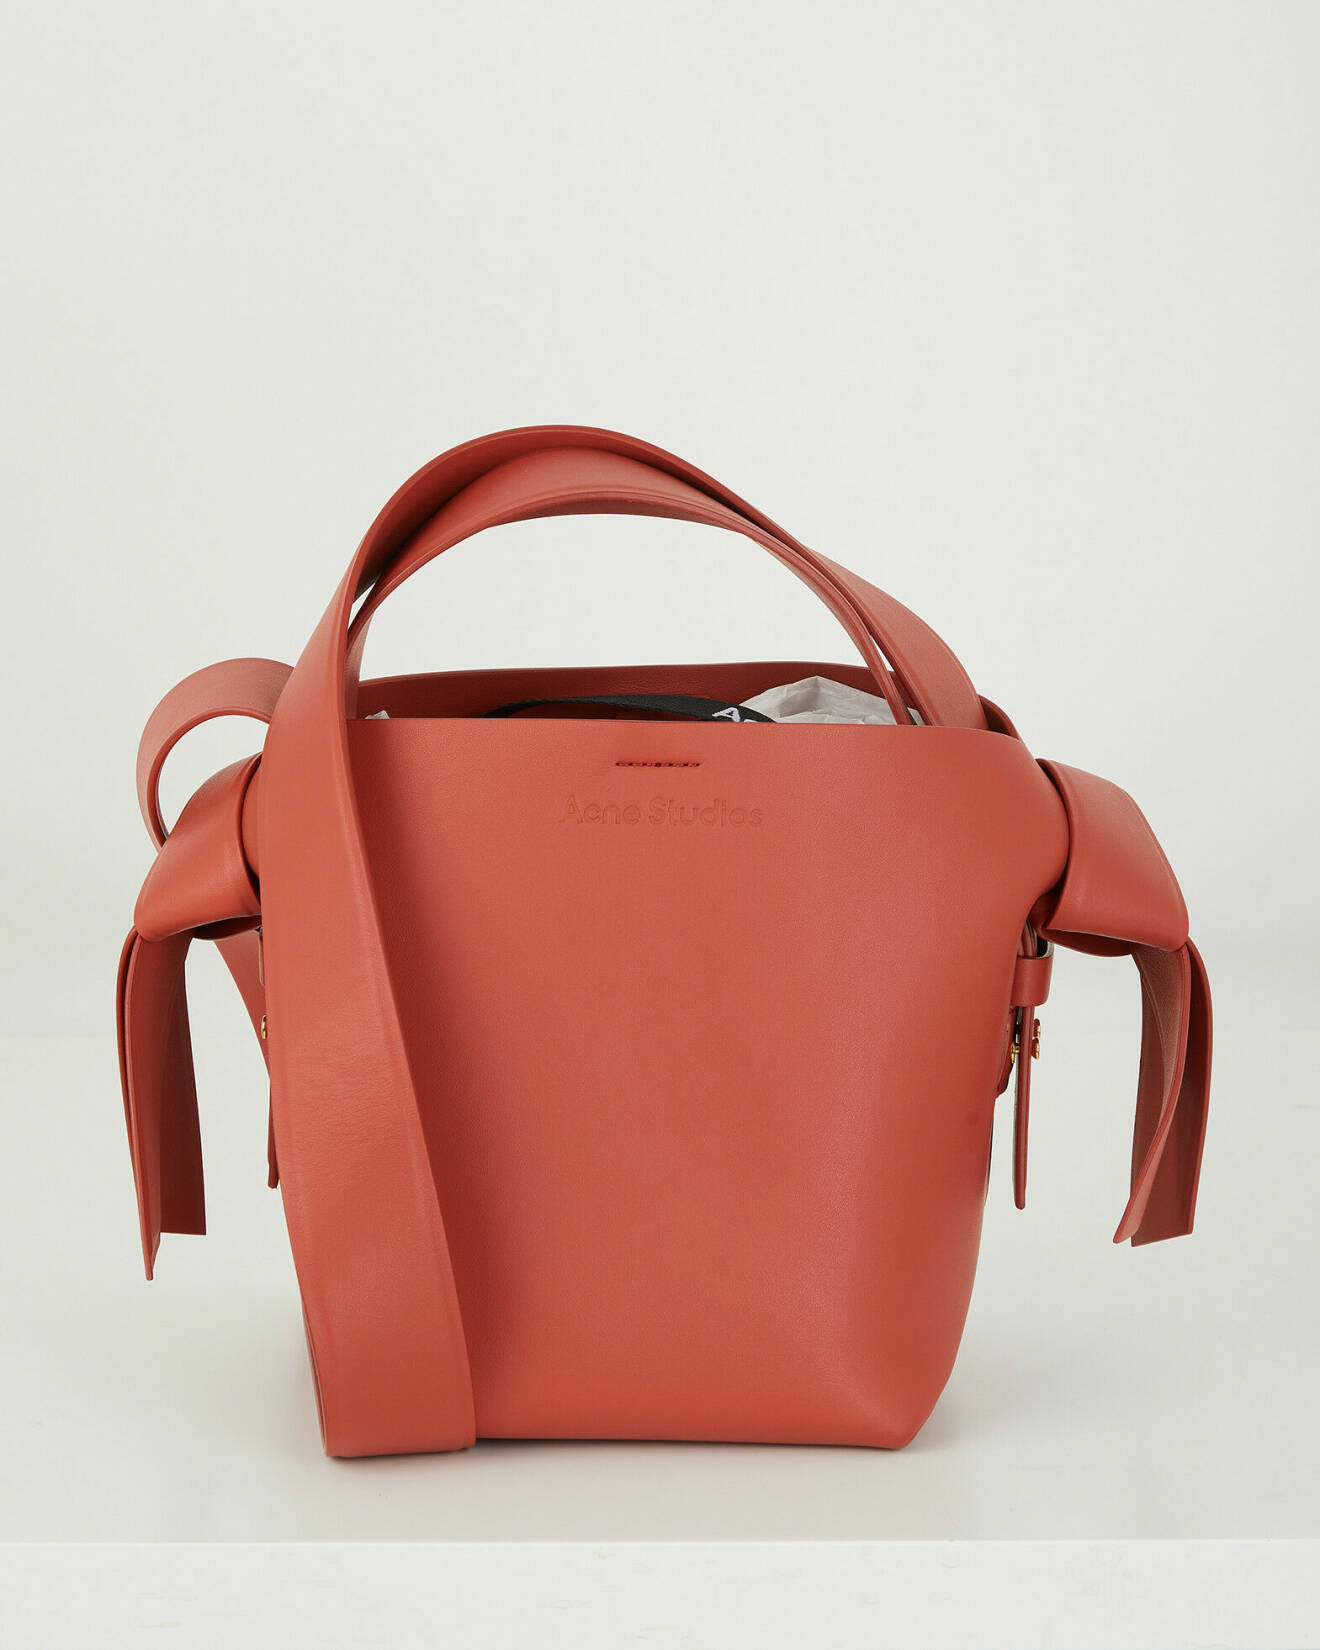 Röd väska i skinn från Acne. Väskan har en lång axelrem och ett kortare handtag.